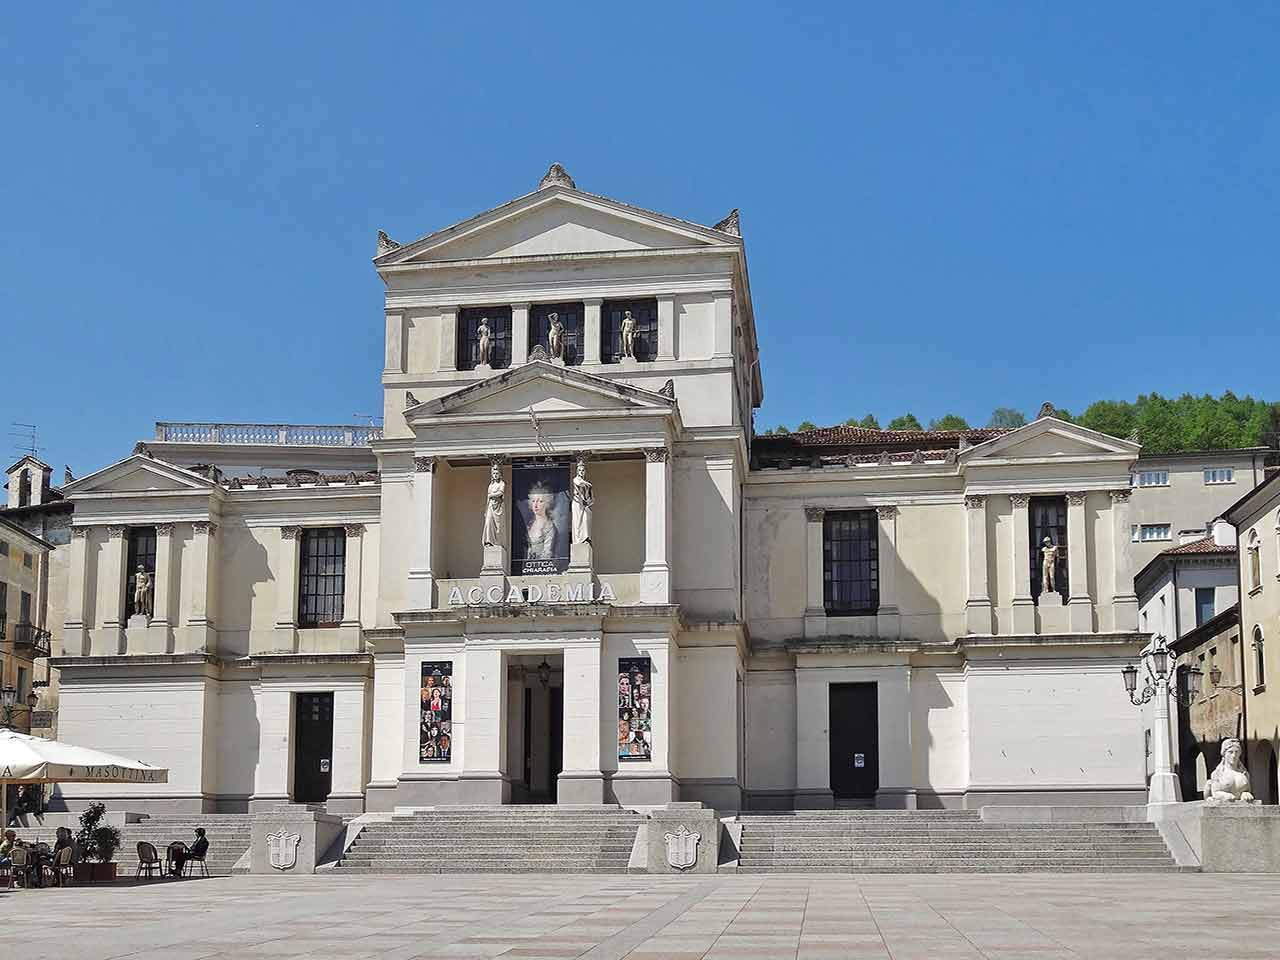 Il Teatro Accademia in Piazza Cima a Conegliano Veneto - Un weekend in camper a Treviso e dintorni.